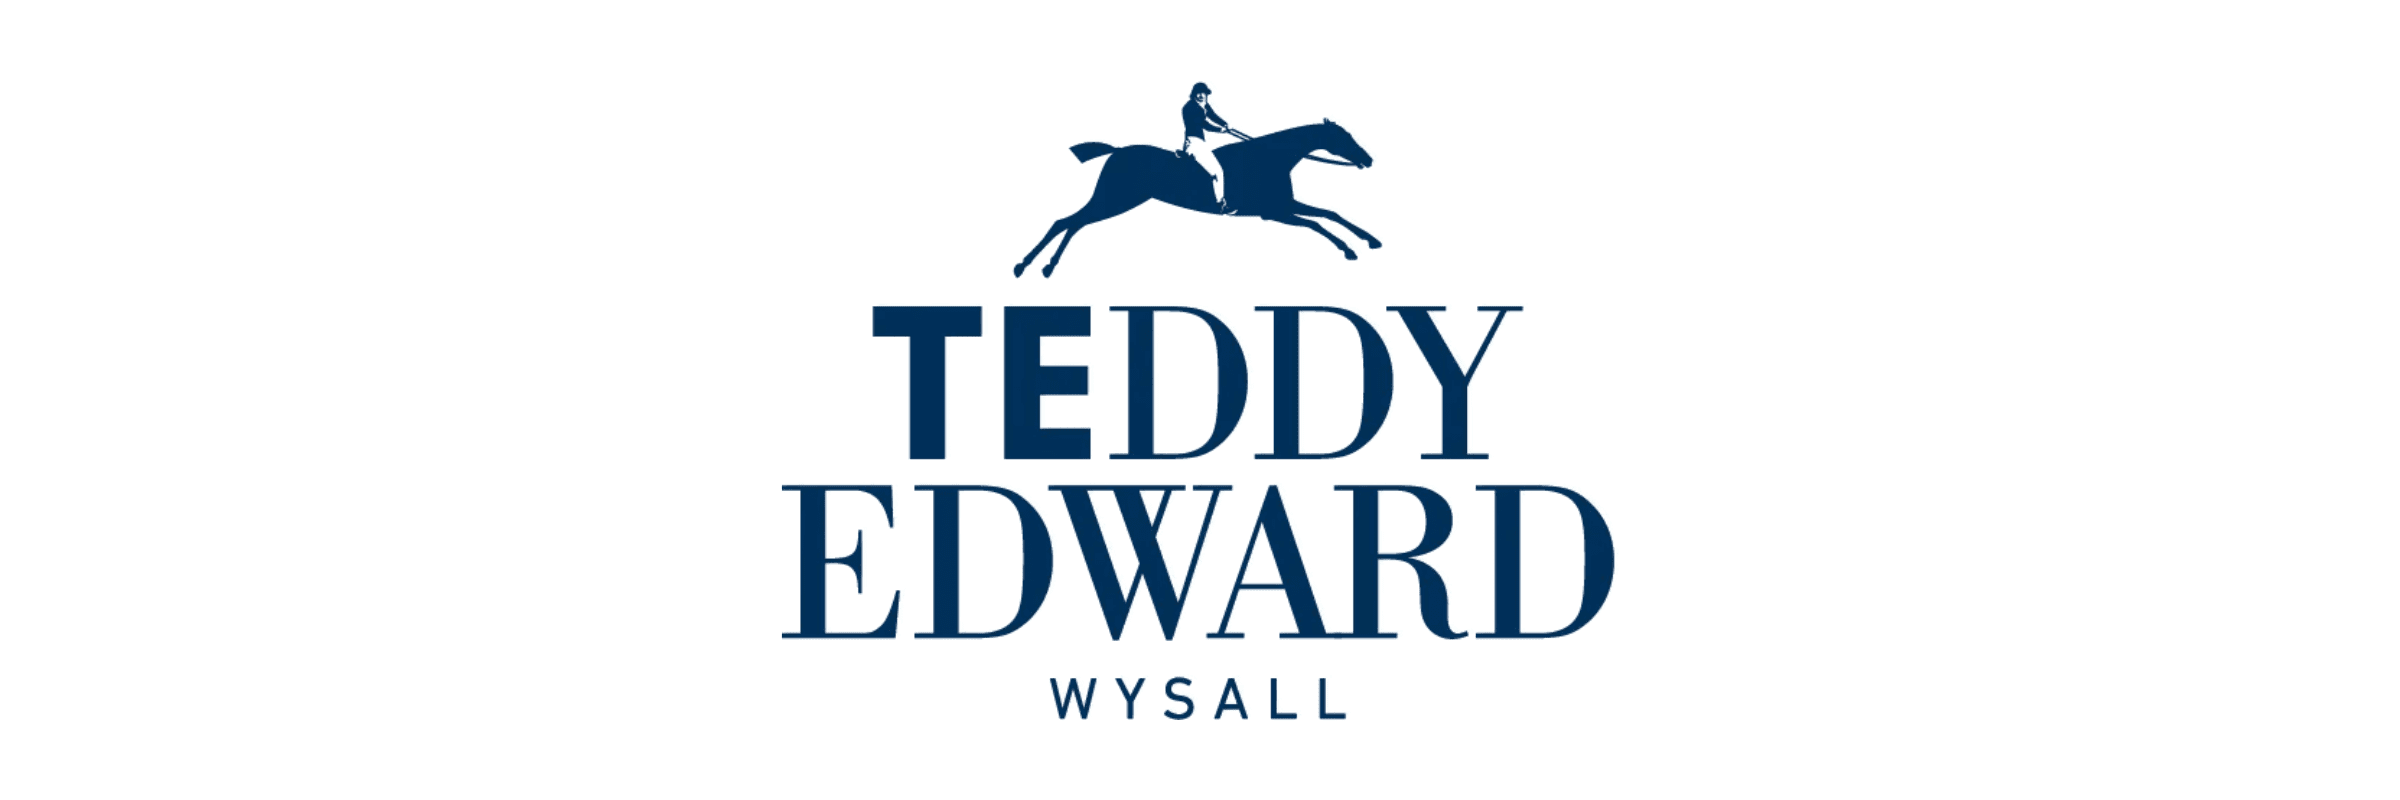 Teddy Edward Clothing Brand